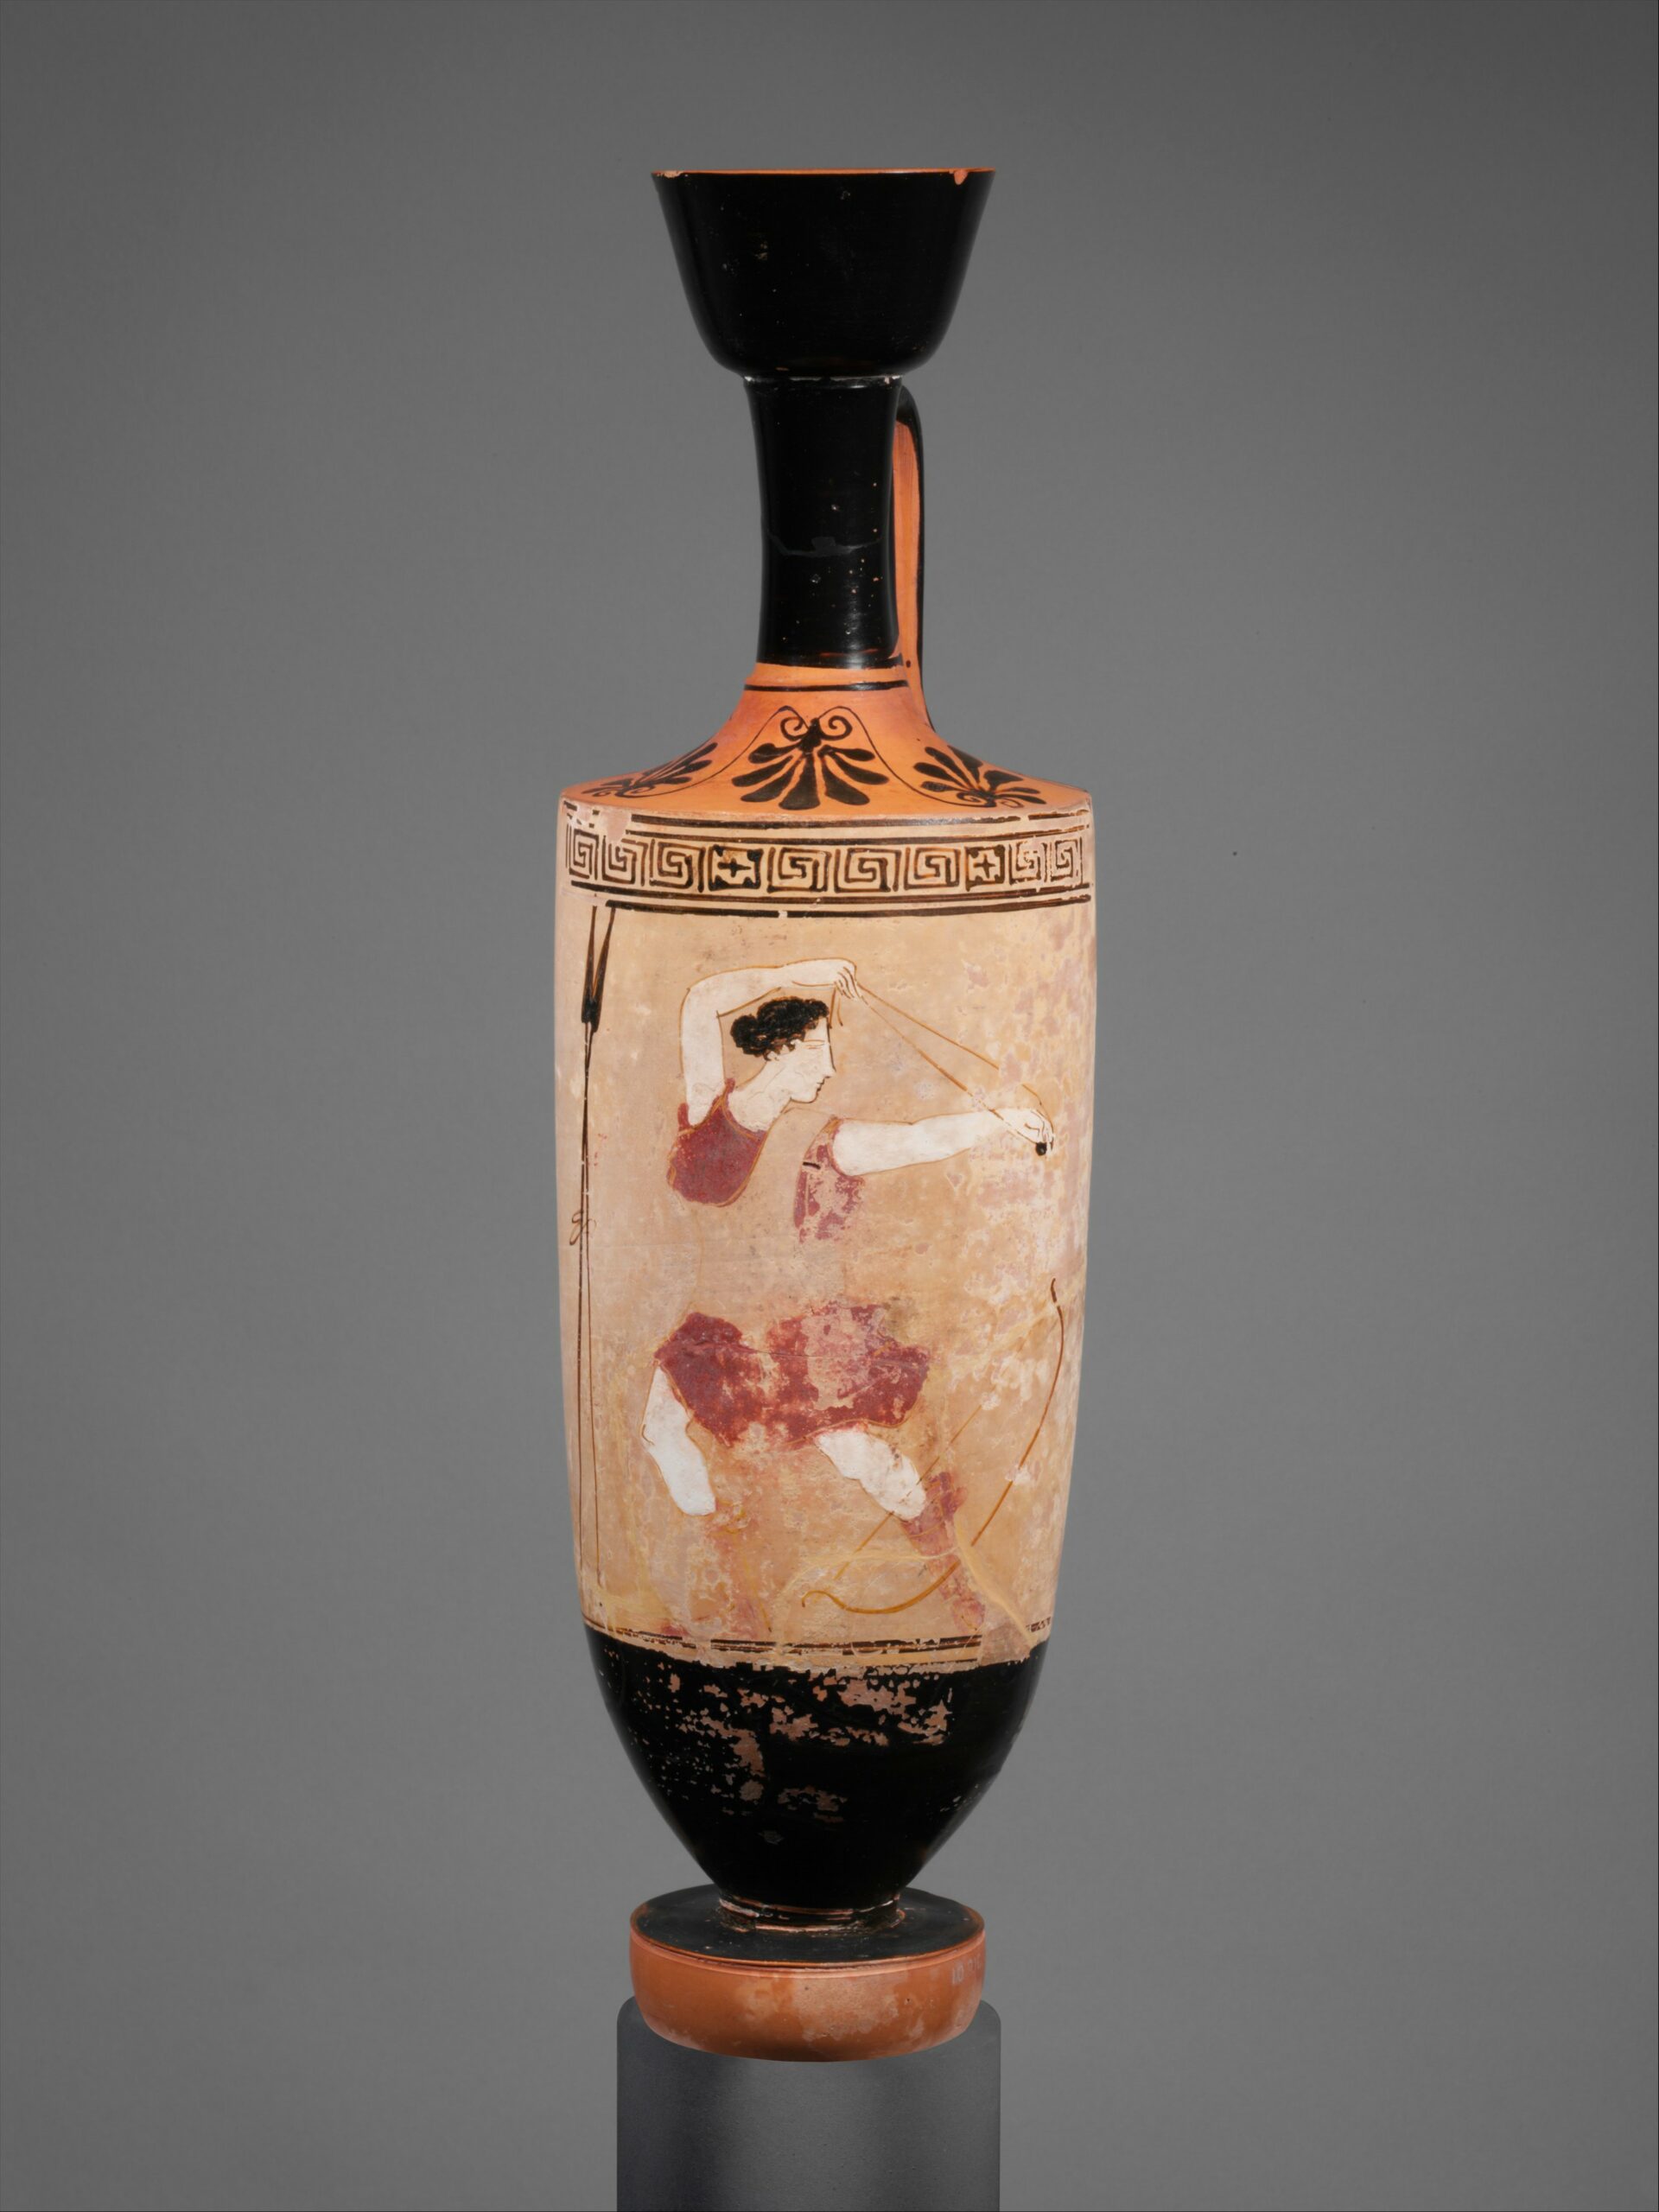 Vase painting: Amazon with slingshot